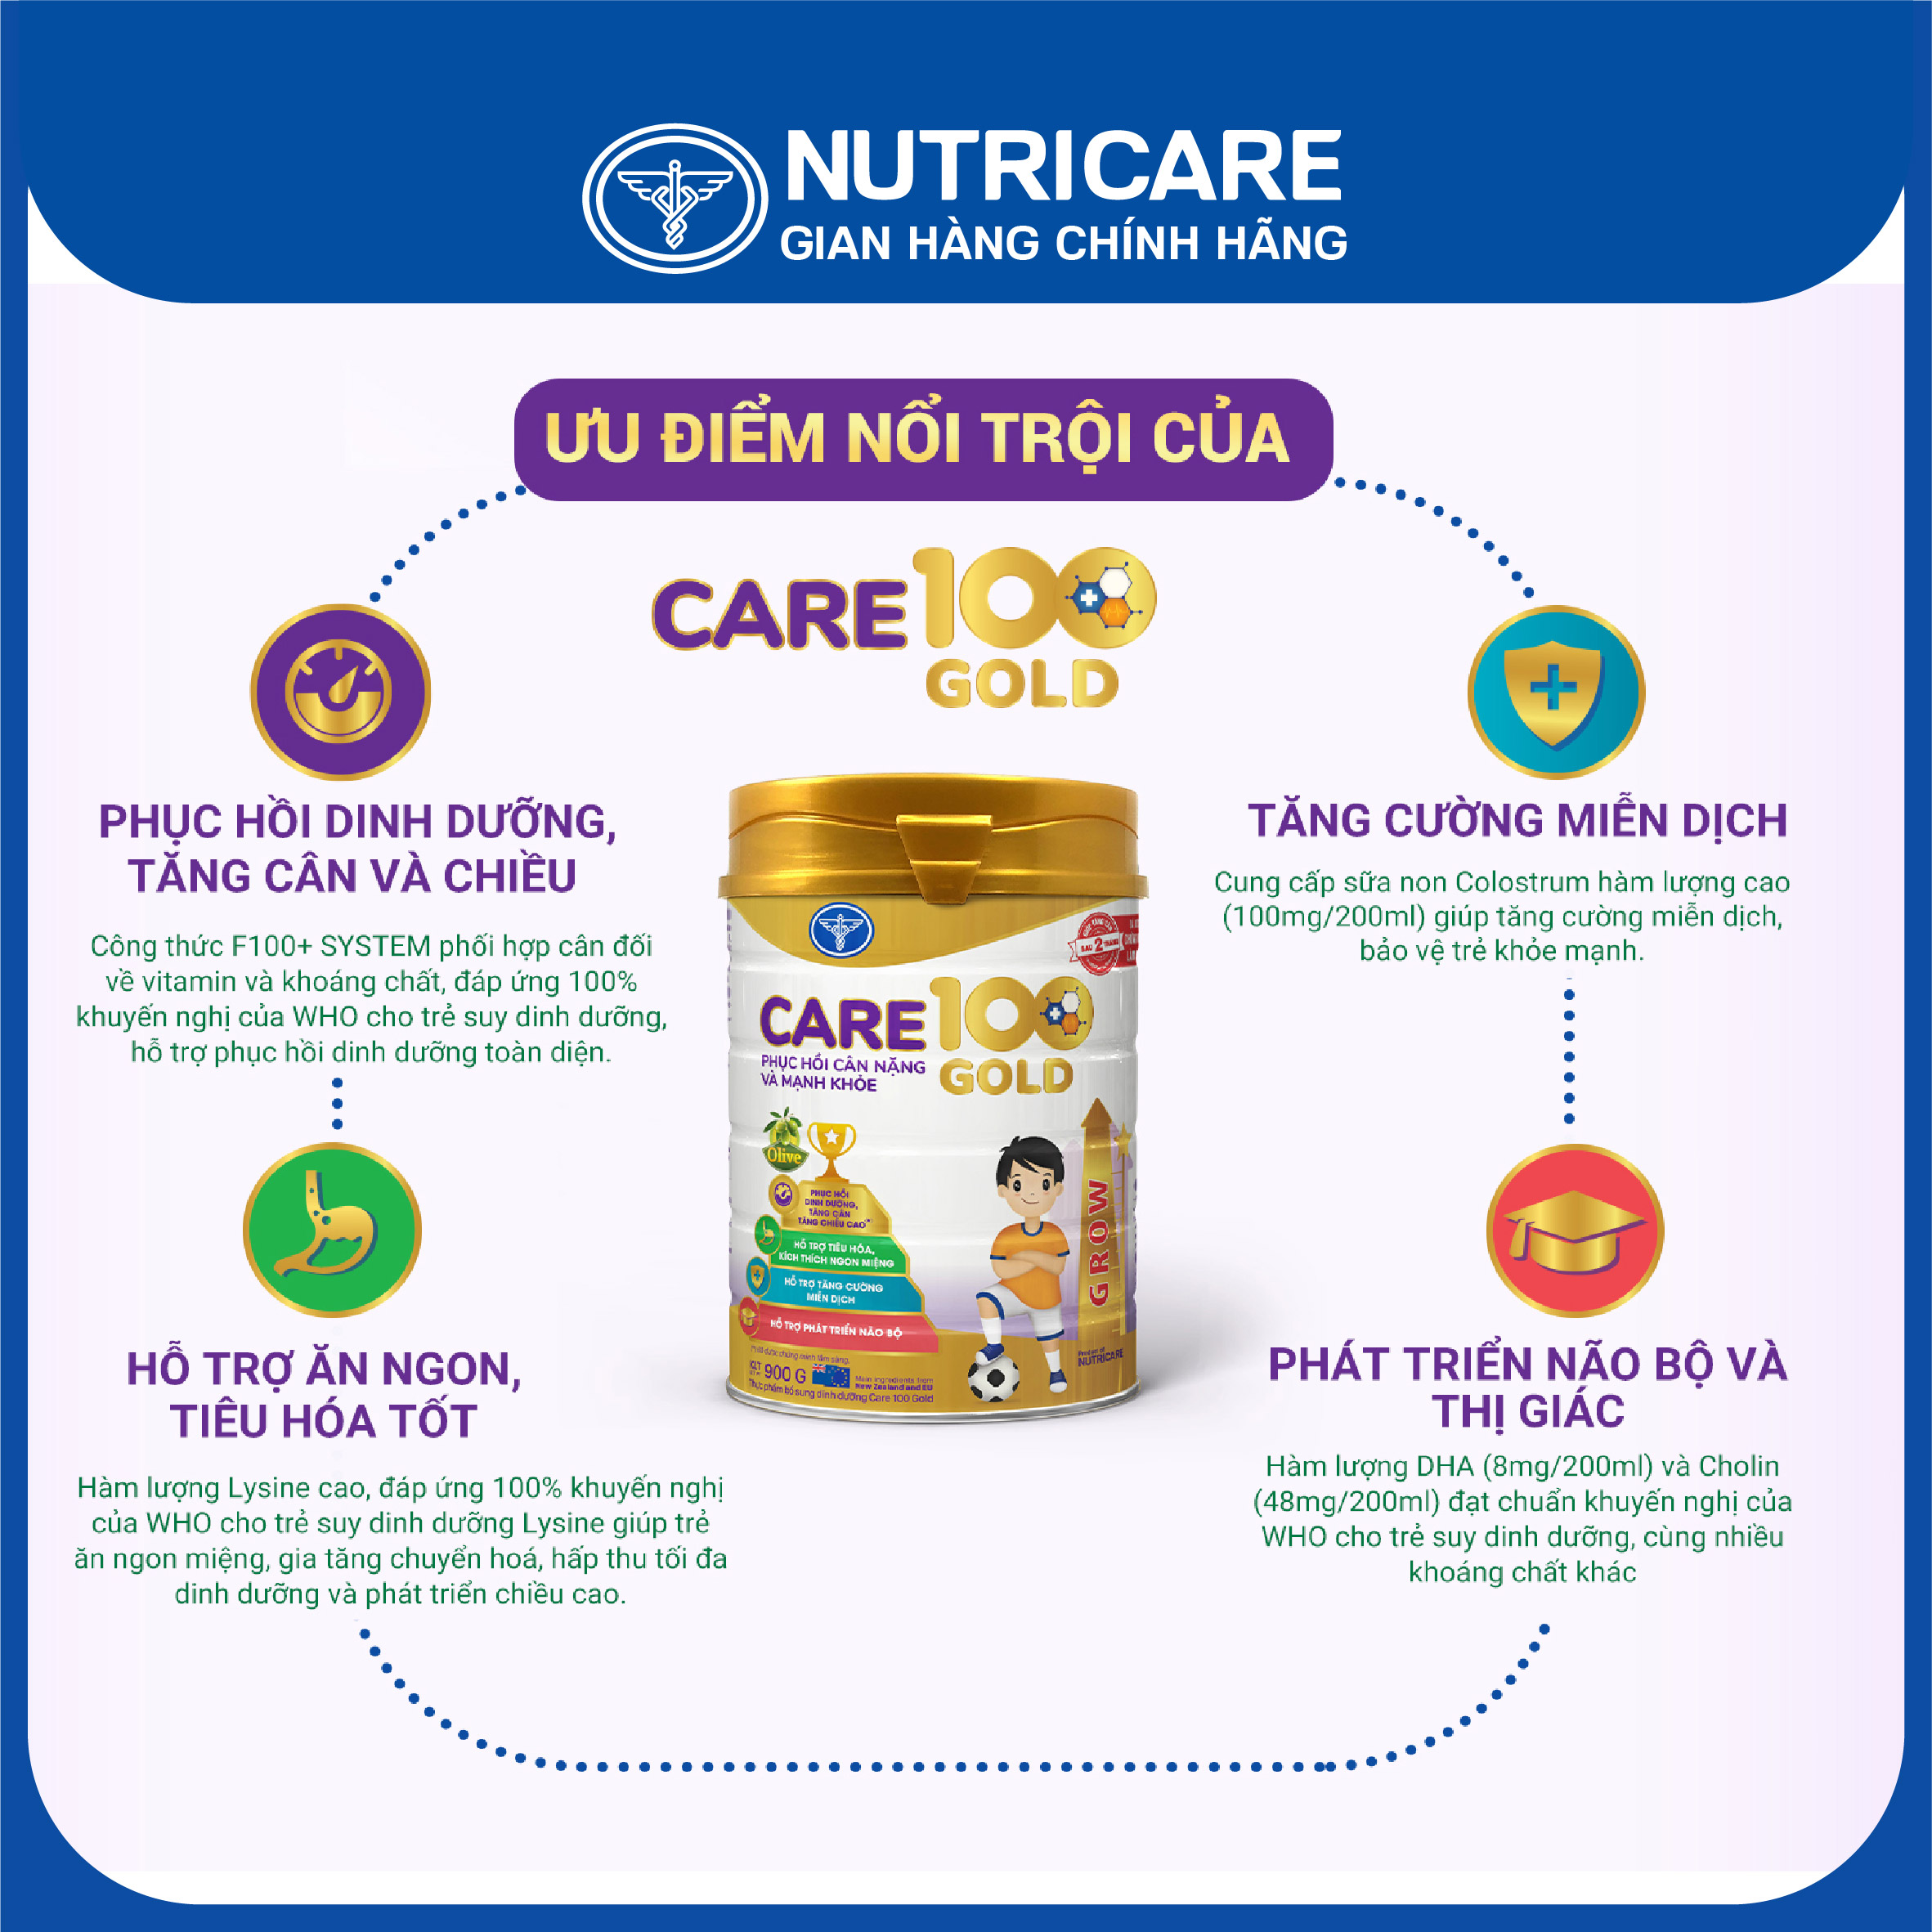 Sữa bột Nutricare Care 100 Gold cho trẻ biếng ăn, suy dinh dưỡng 400g